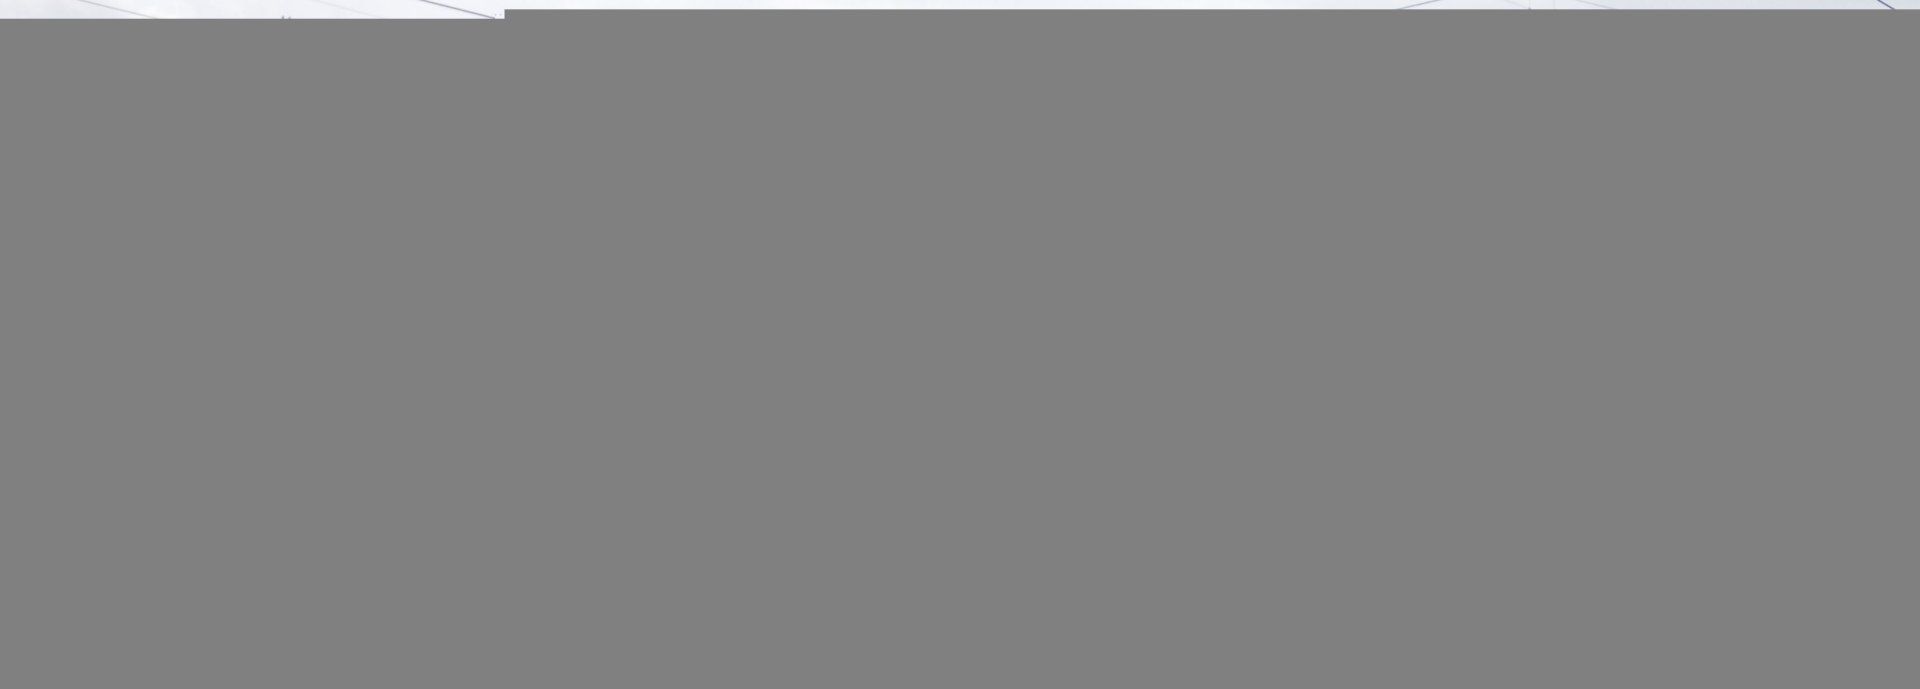 Солдатская казарма (с двумя служебными флигелями) / Город Санкт-Петербург |  Памятники истории и культуры | ИнфоТаймс / www.infotimes.ru